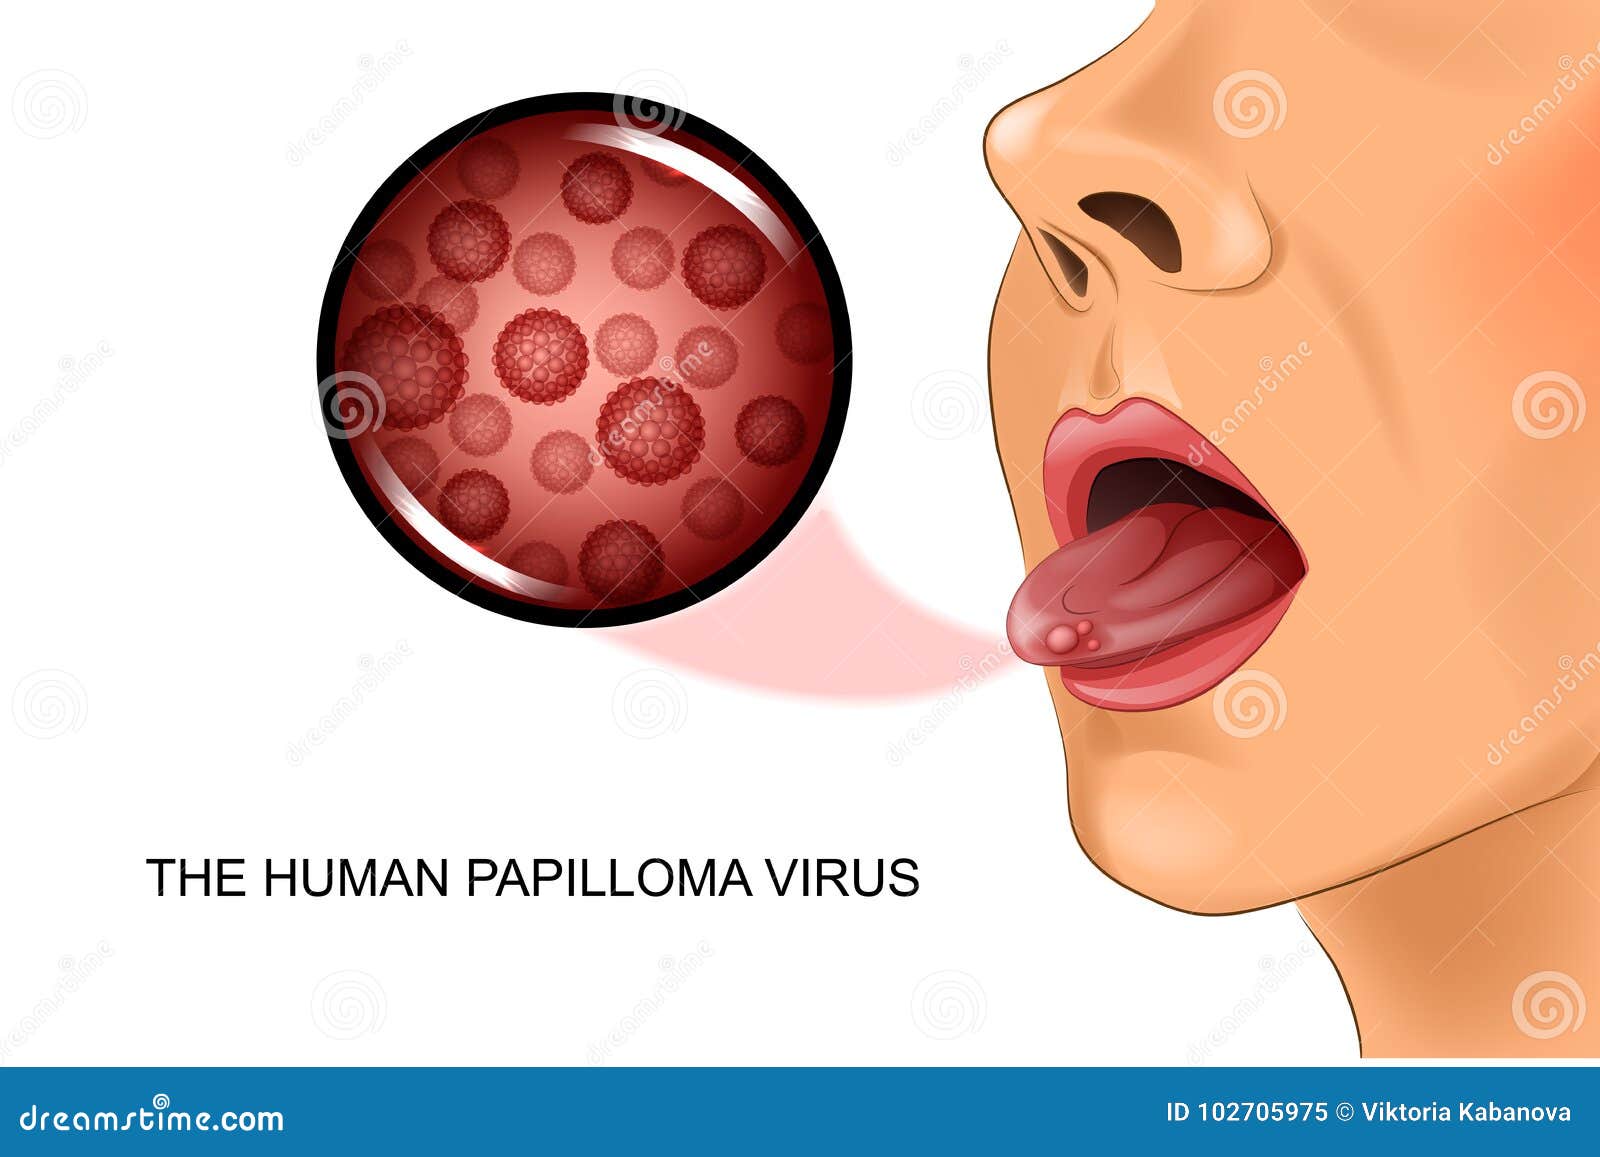 papillomavirus sur la langue